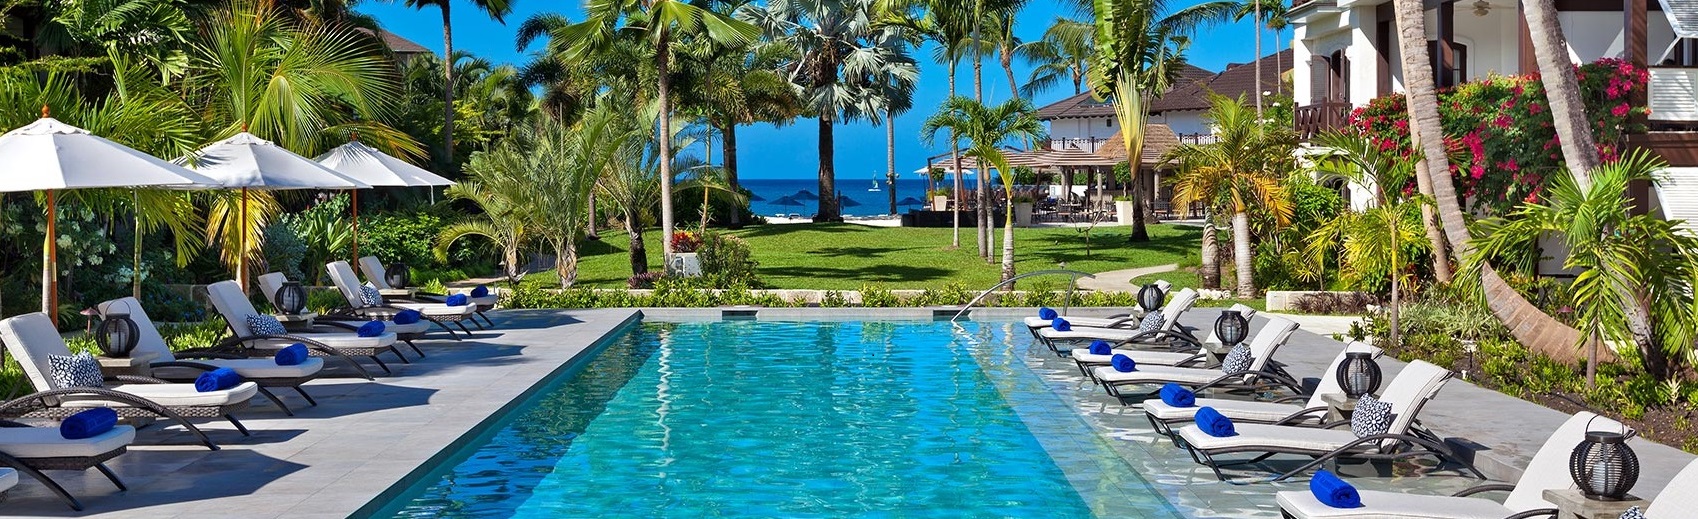 best luxury hotels in caribbean